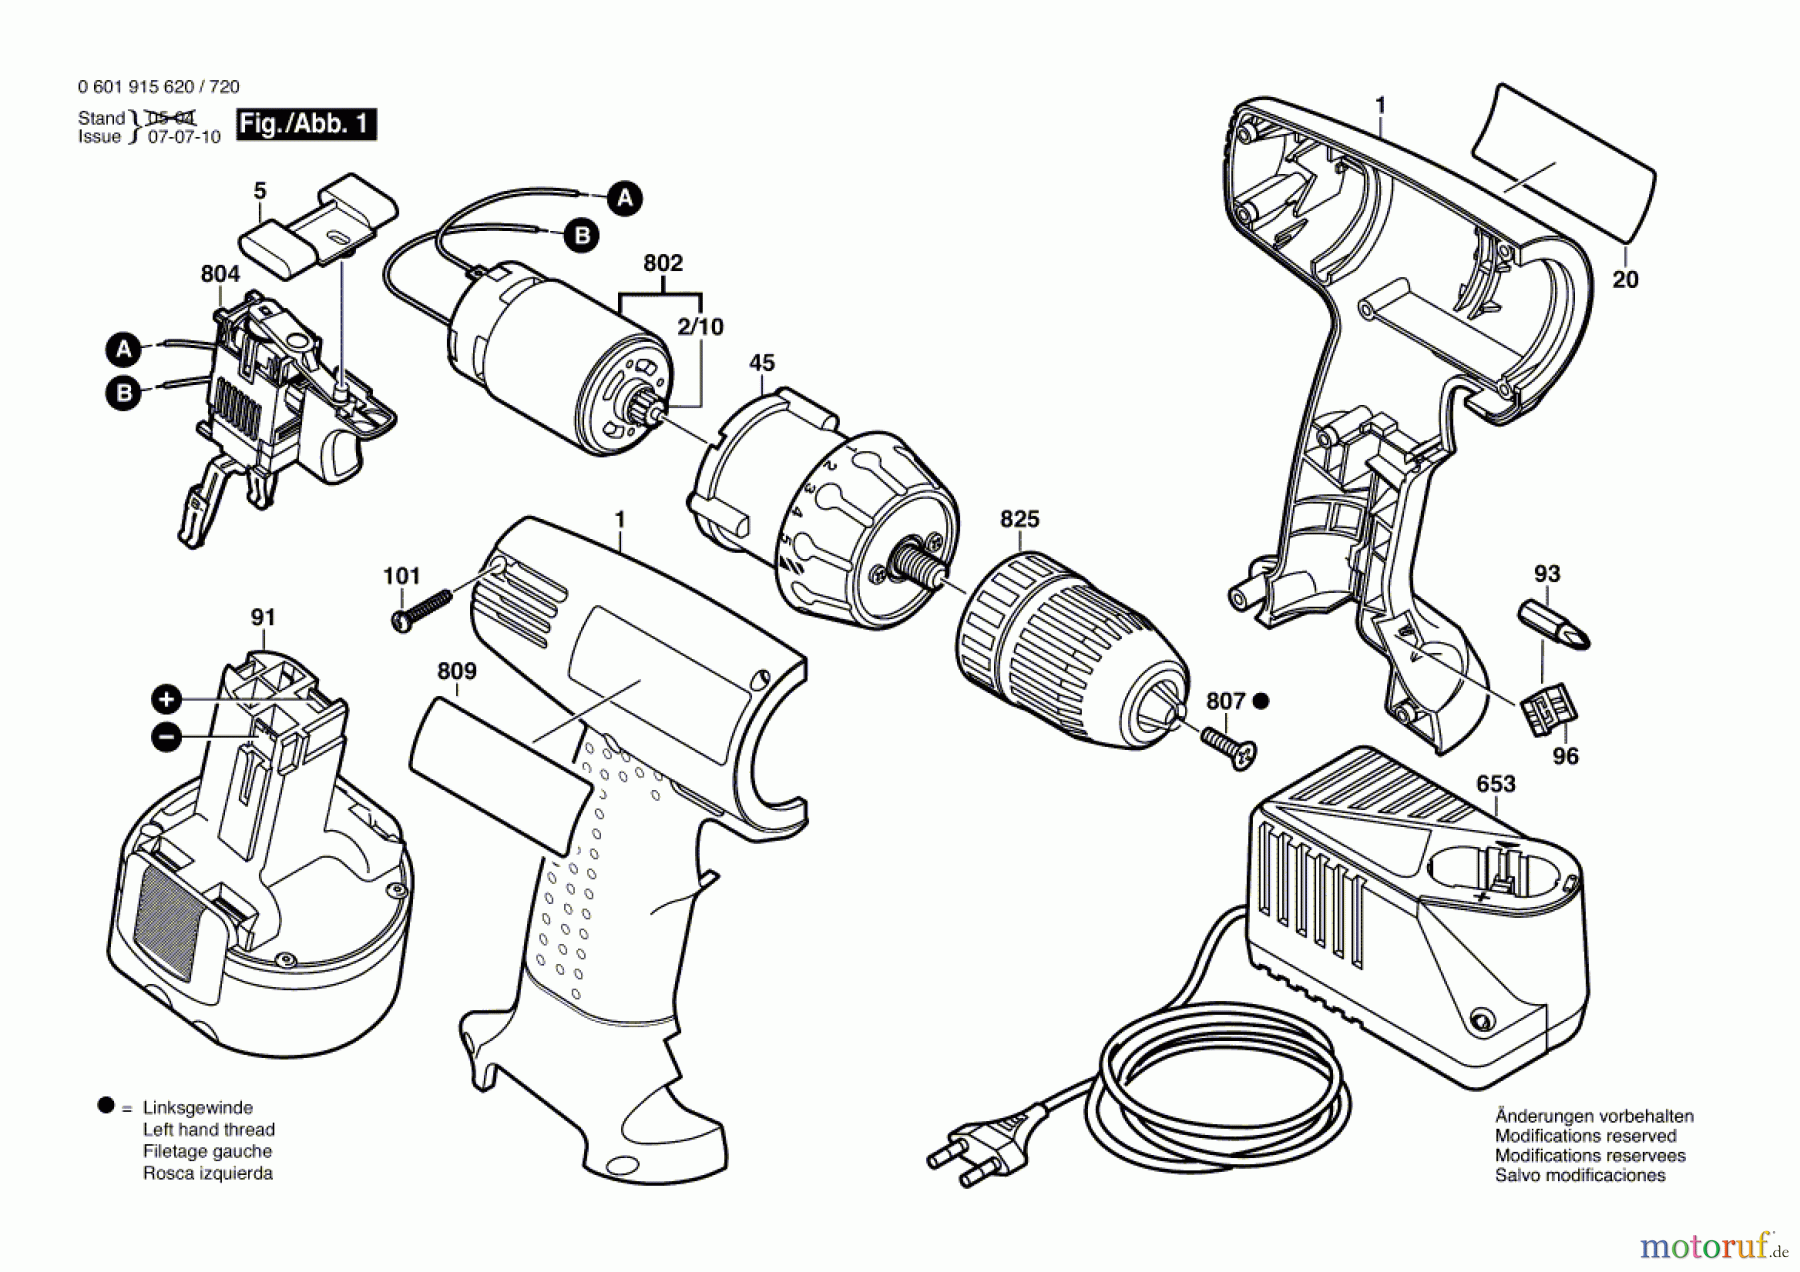  Bosch Werkzeug Werkzeugsatz GSR 7,2 V Seite 1